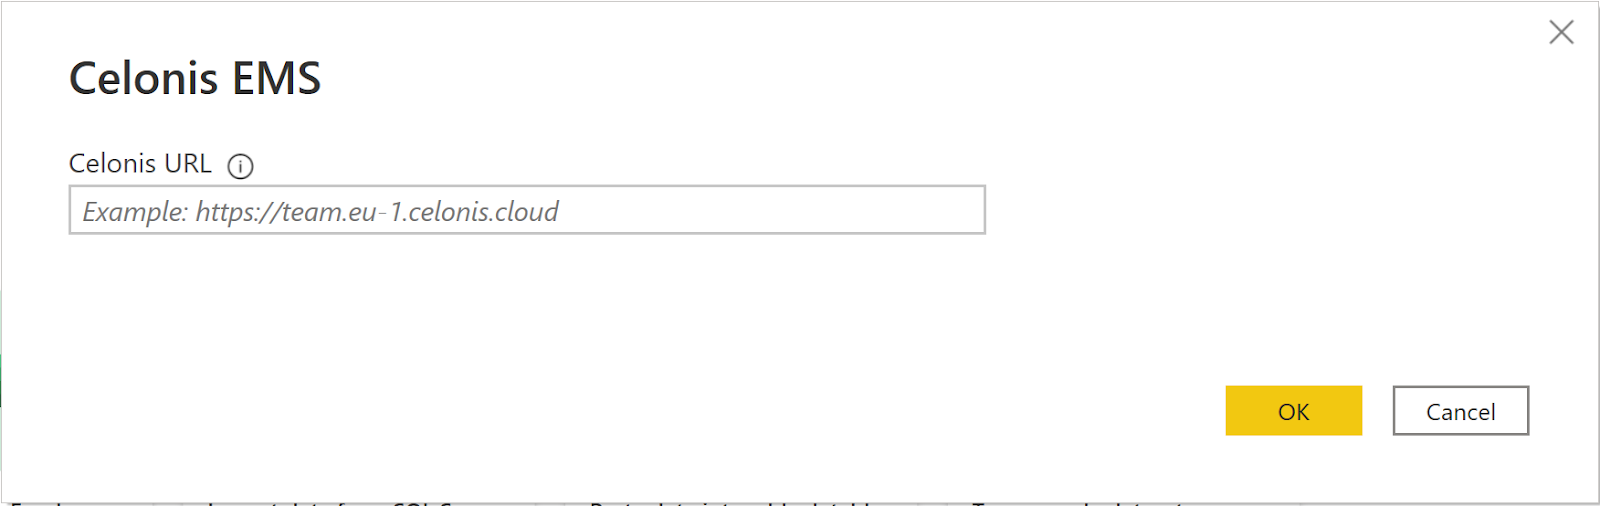 Captura de pantalla del cuadro de diálogo Celonis EMS con la dirección URL de Celonis EMS especificada.